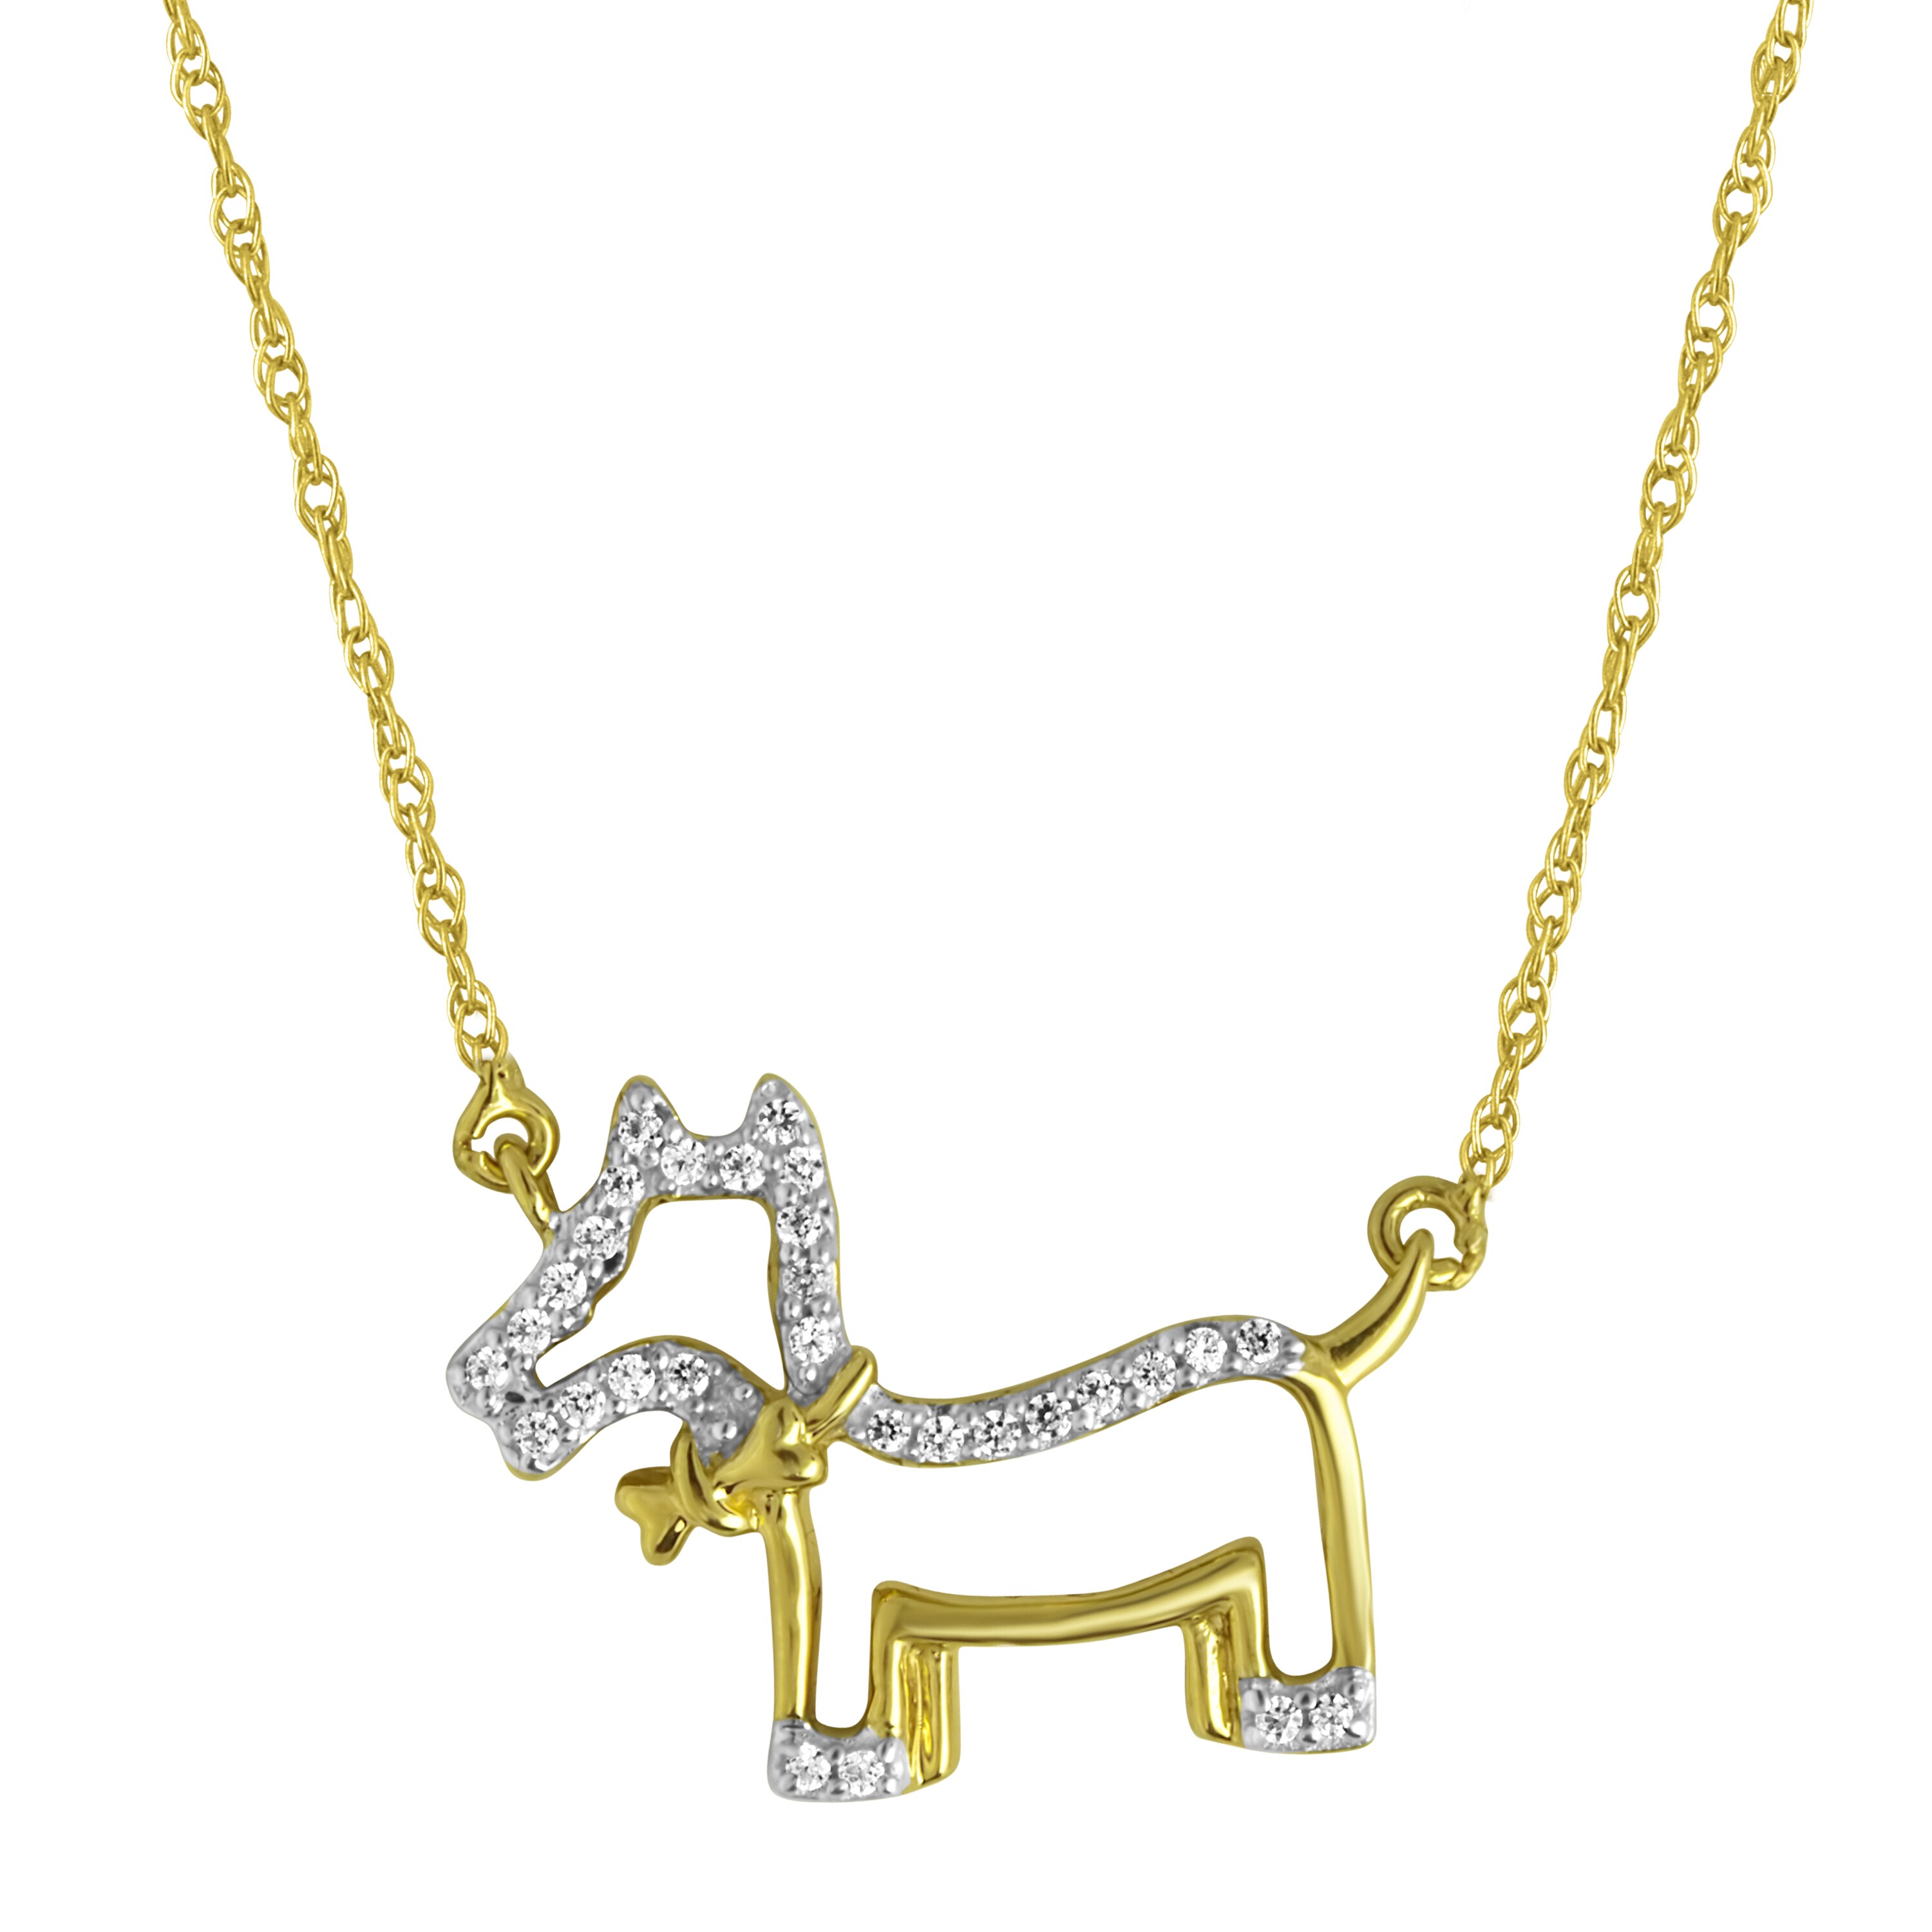 dog shaped necklace